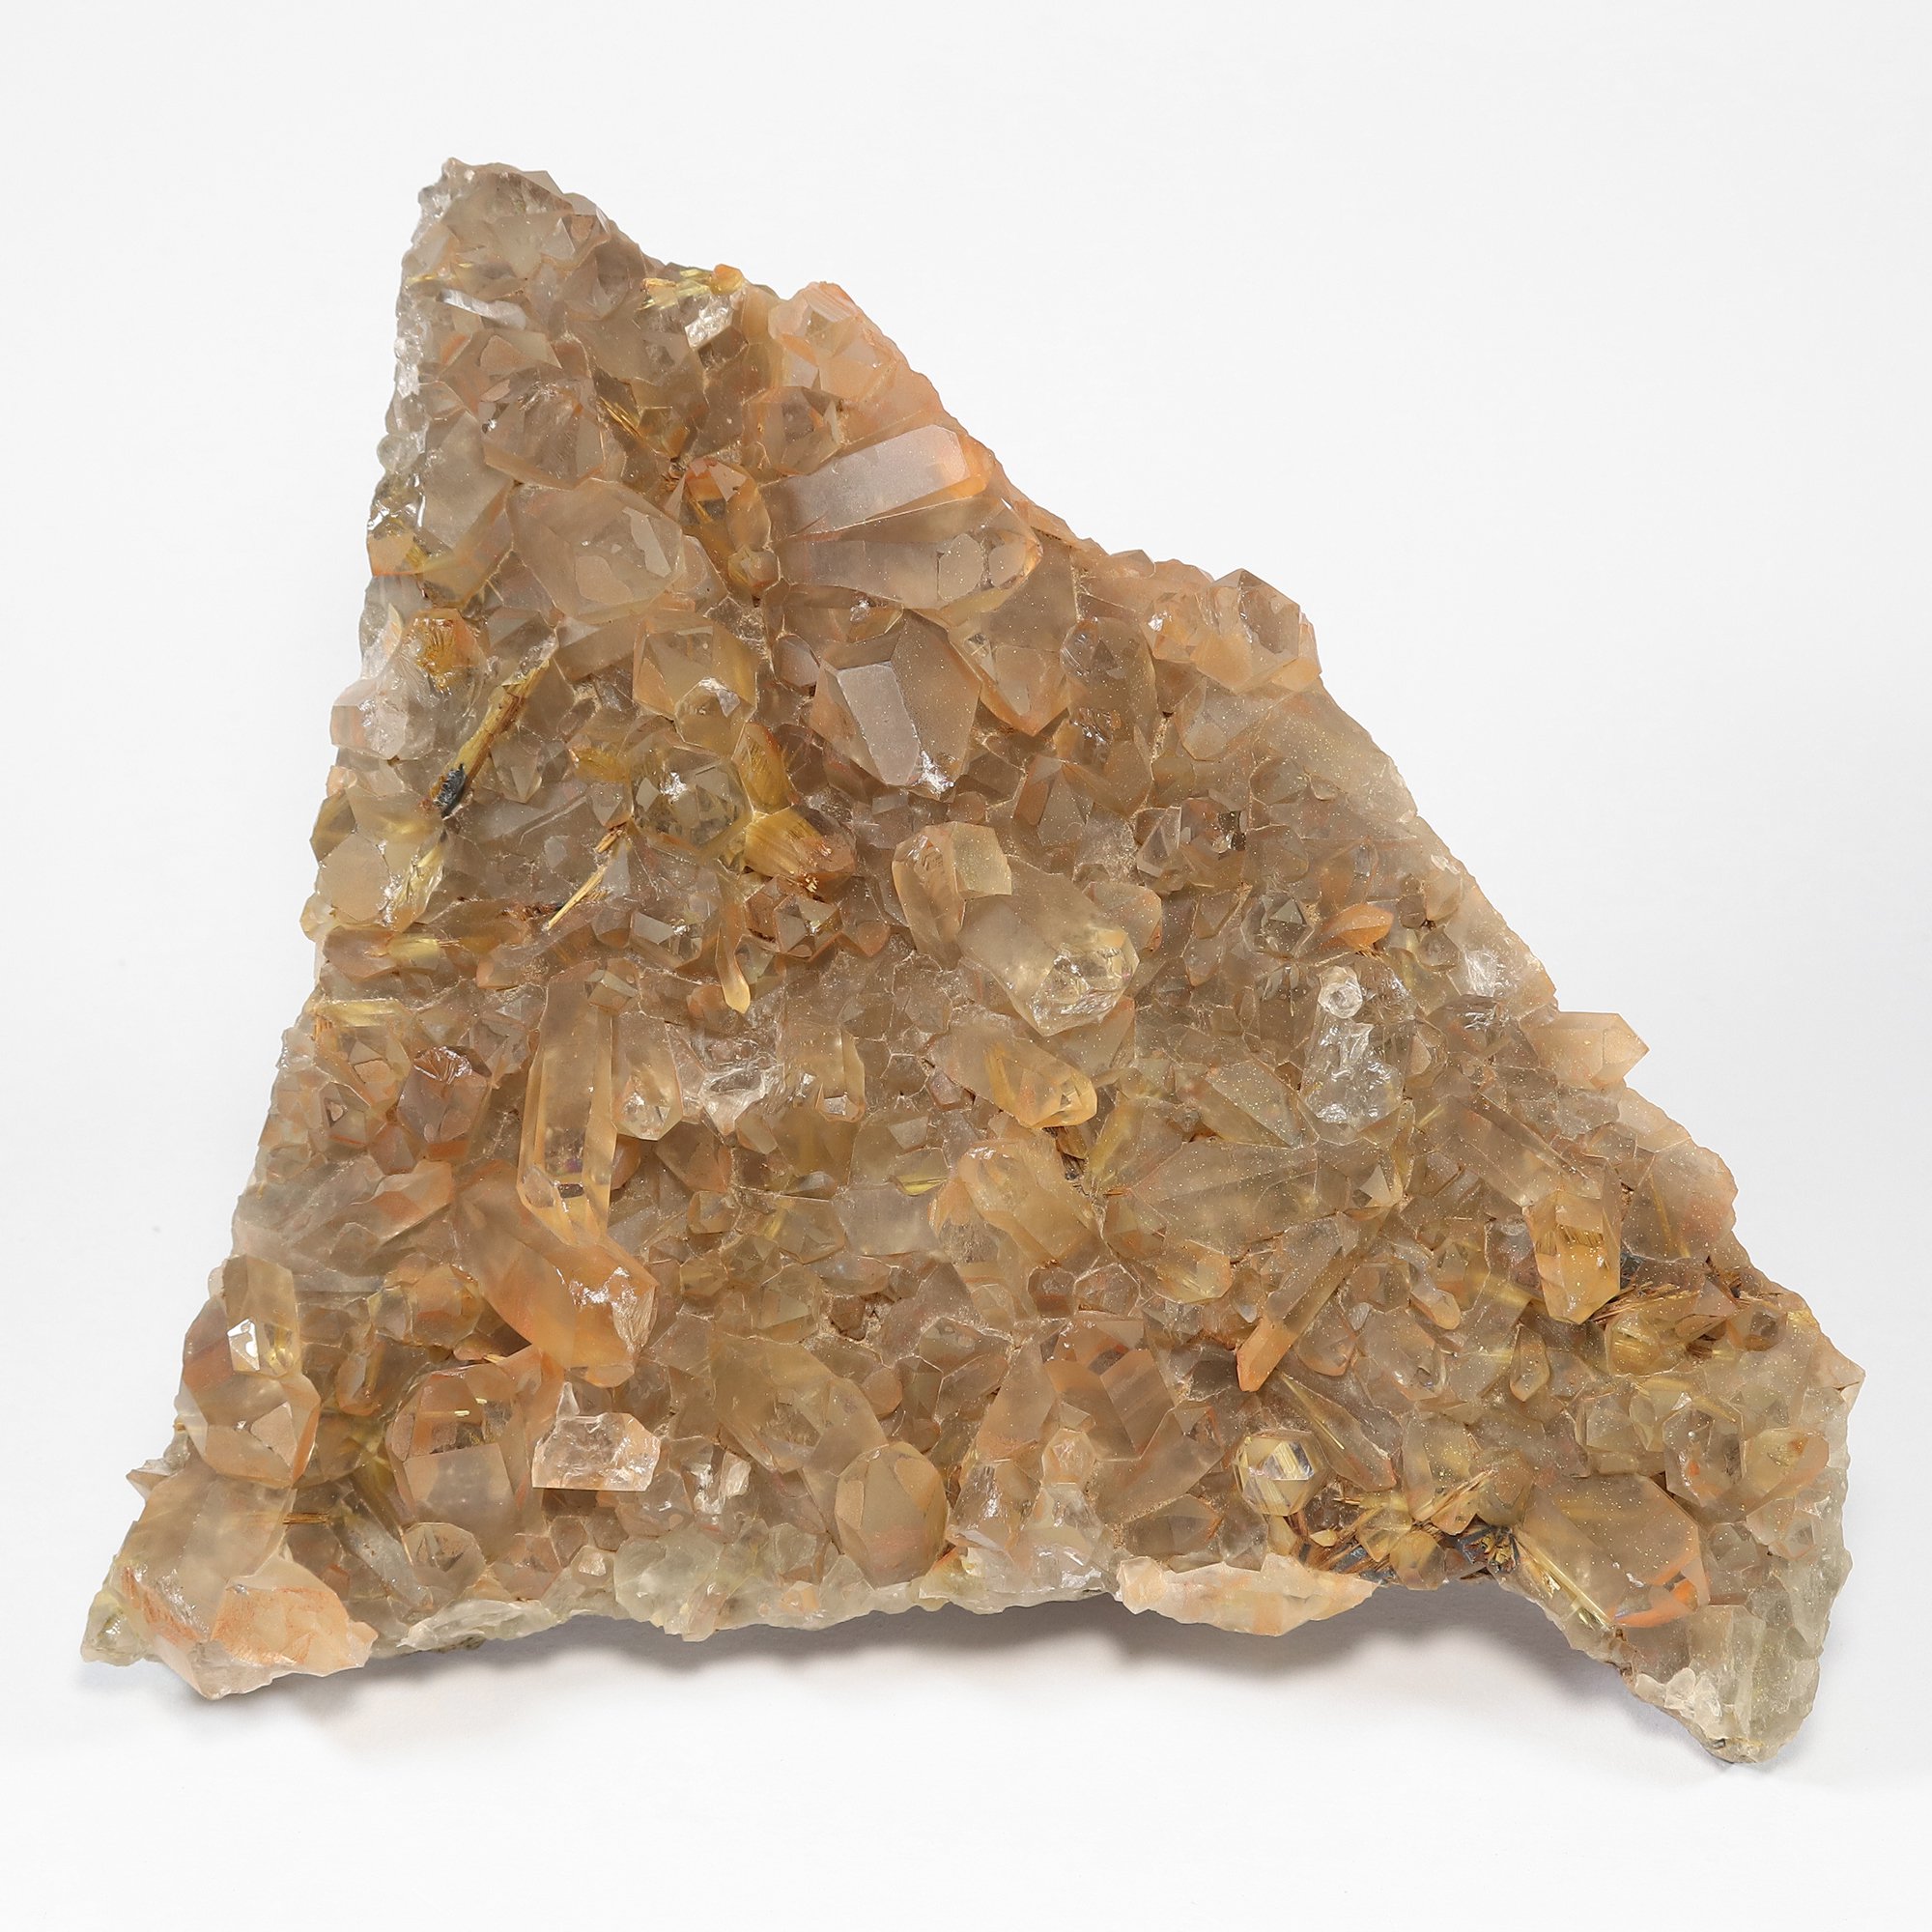 ブラジル・ミナスジェライス州産 ゴールドルチルクォーツ(タンジェリンクォーツ) クラスター 原石(型番rc148)